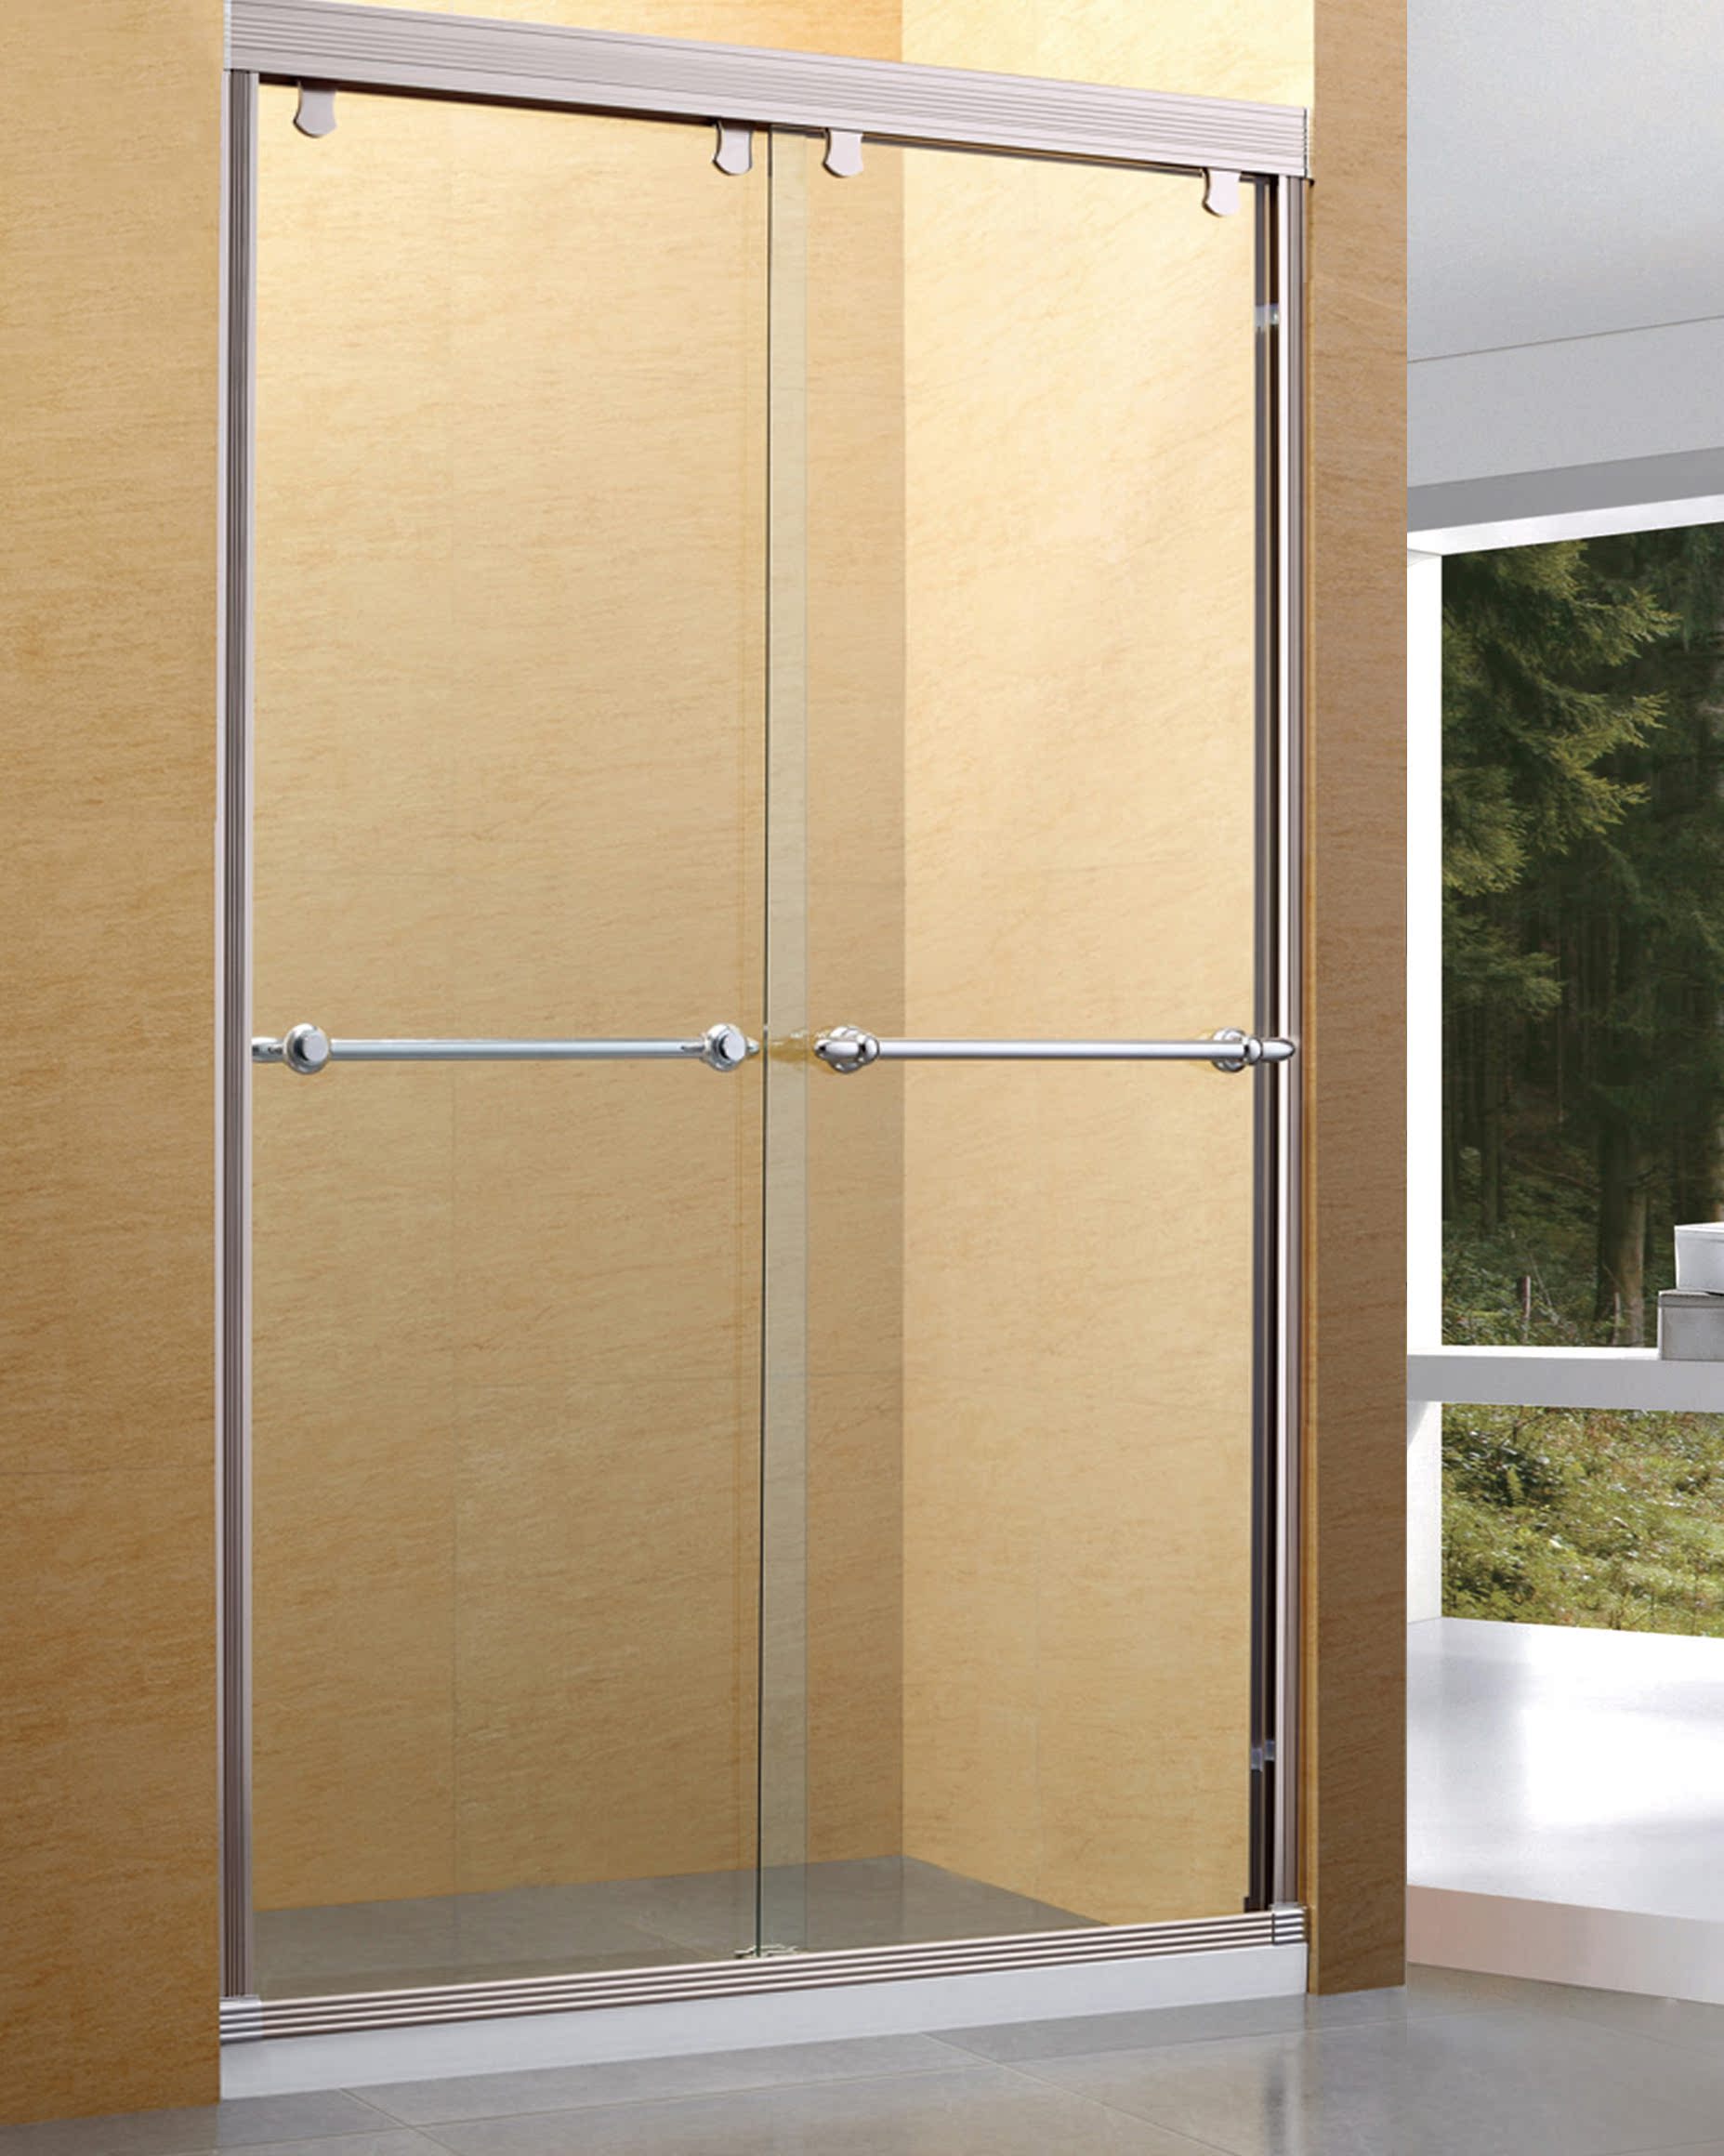 新款时尚高档铁灰色淋浴房整体简易移门浴室 钢化玻璃一字型隔断